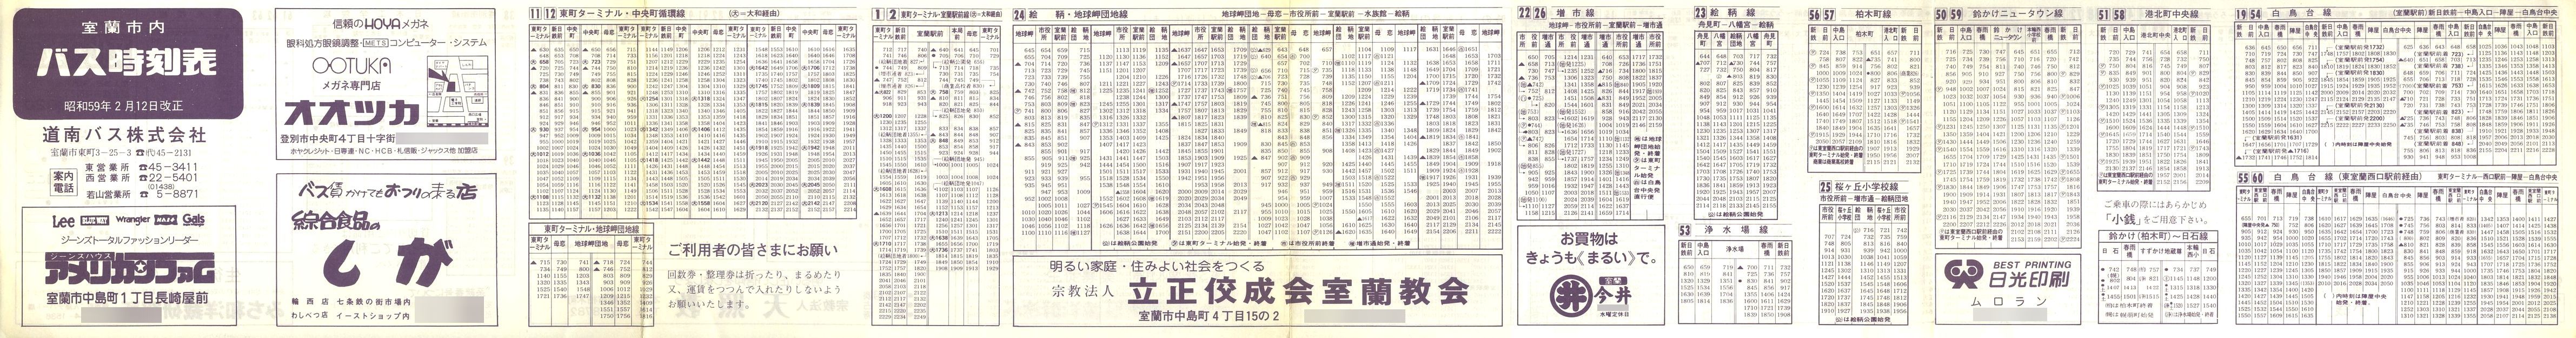 1984-02-12改正_道南バス_室蘭市内線時刻表表面